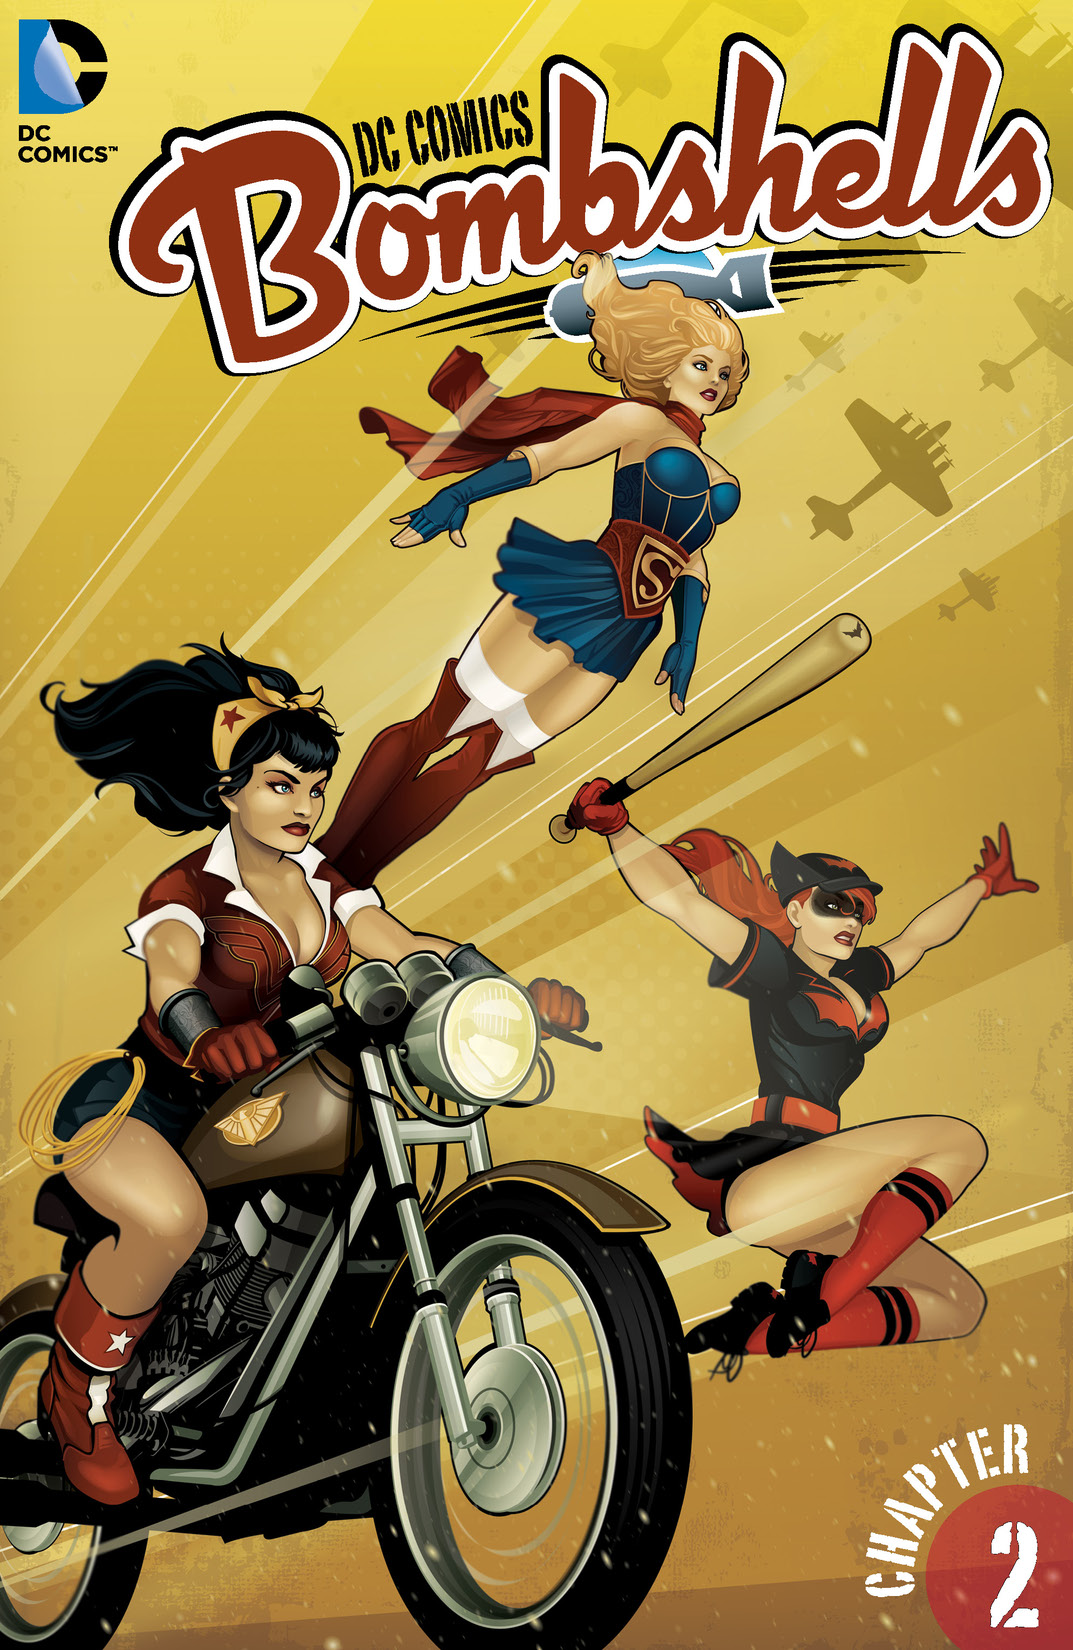 DC Comics: Bombshells #2 preview images